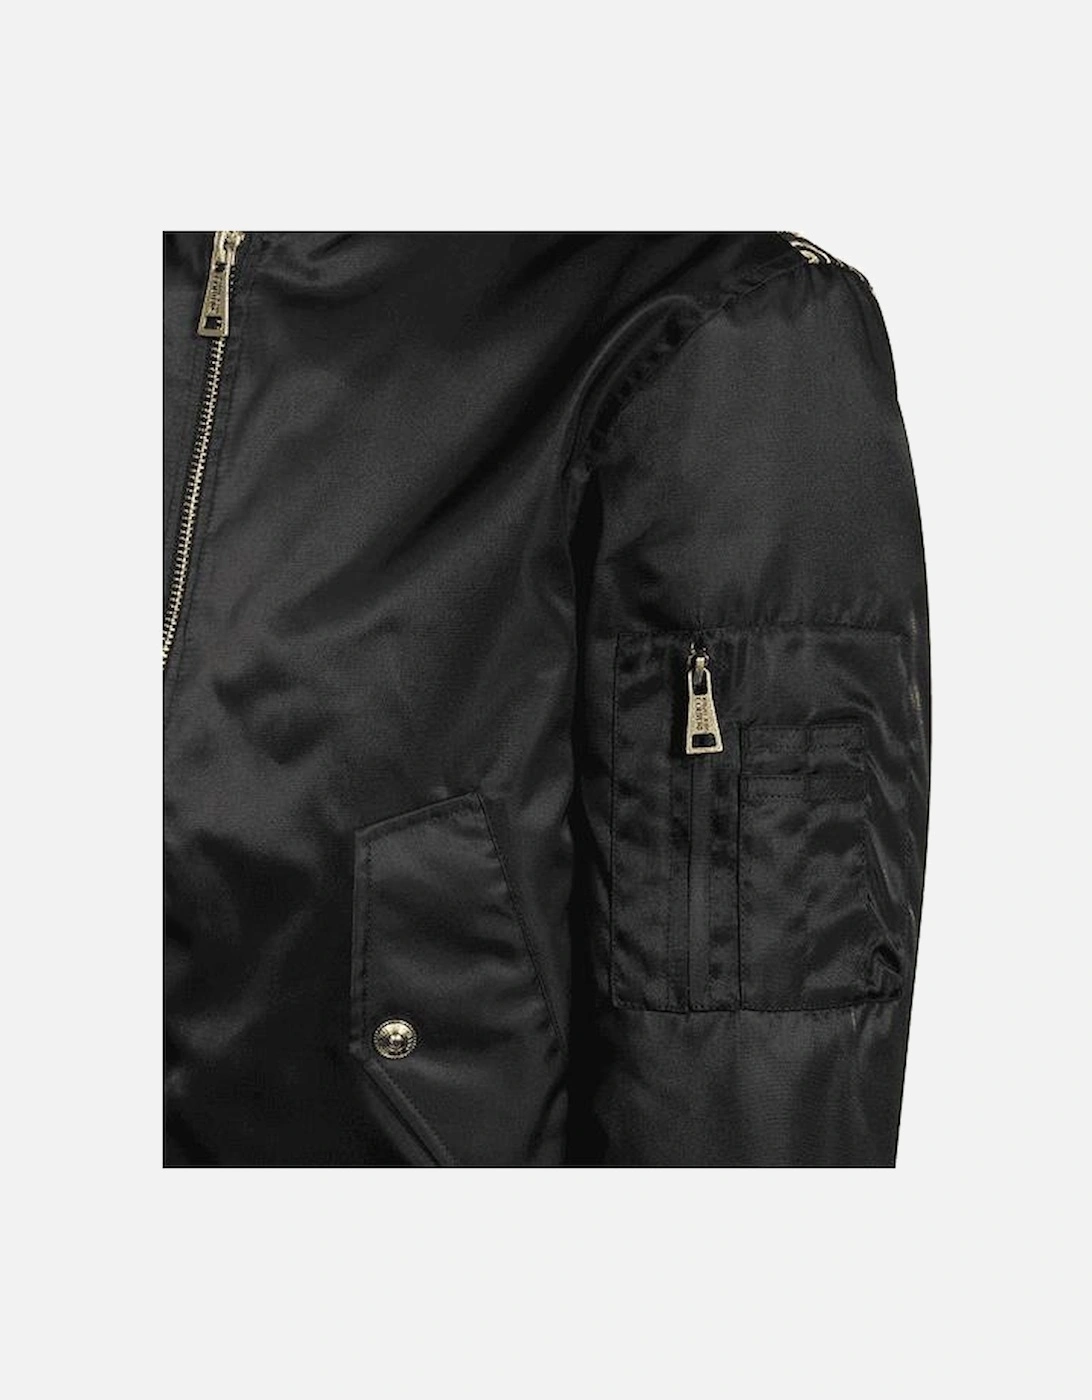 Baroque Design Black/Gold Bomber Jacket